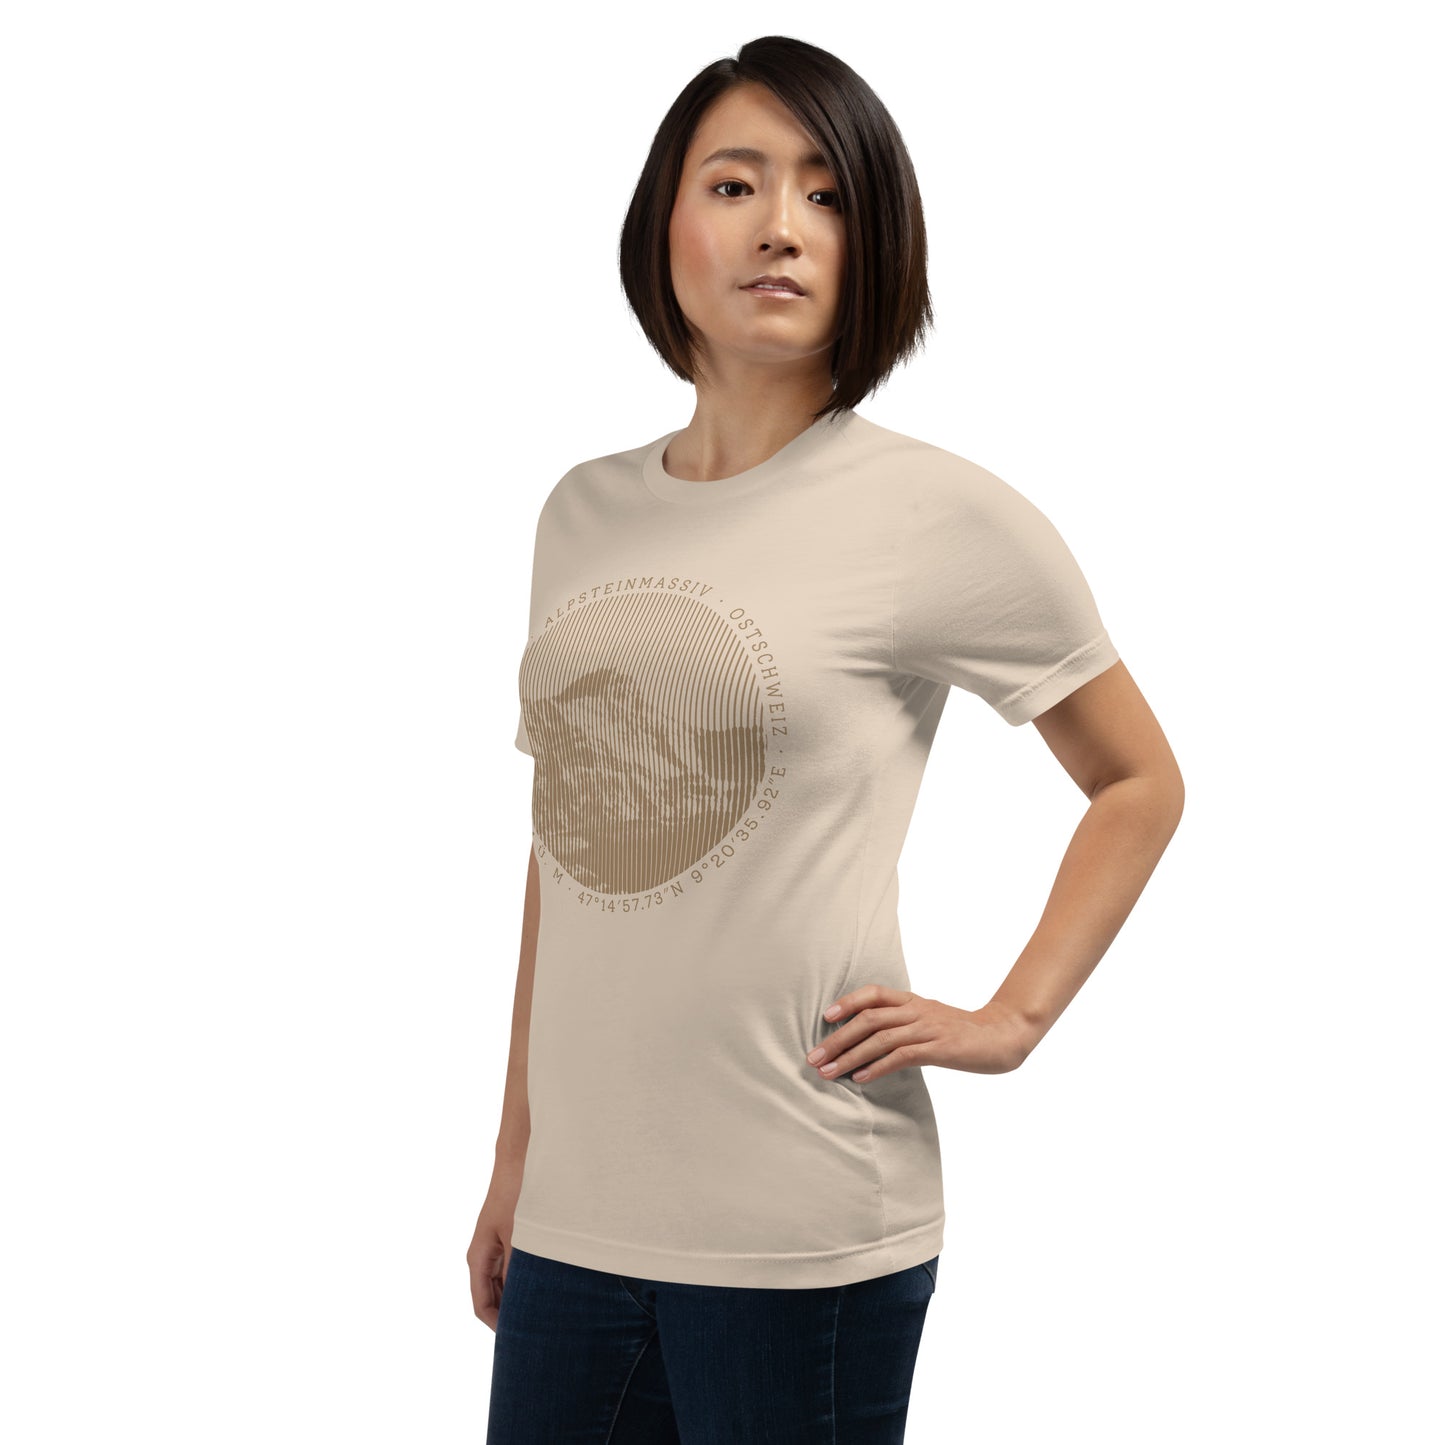 Diese Naturfreundin trägt ein crèmefarbenes Damen T-Shirt von Vallada mit einem Aufdruck des Säntis-Gipfels. Dieses T-Shirt ist ein Ausdruck ihres Enthusiasmus für die Region des Alpsteins.